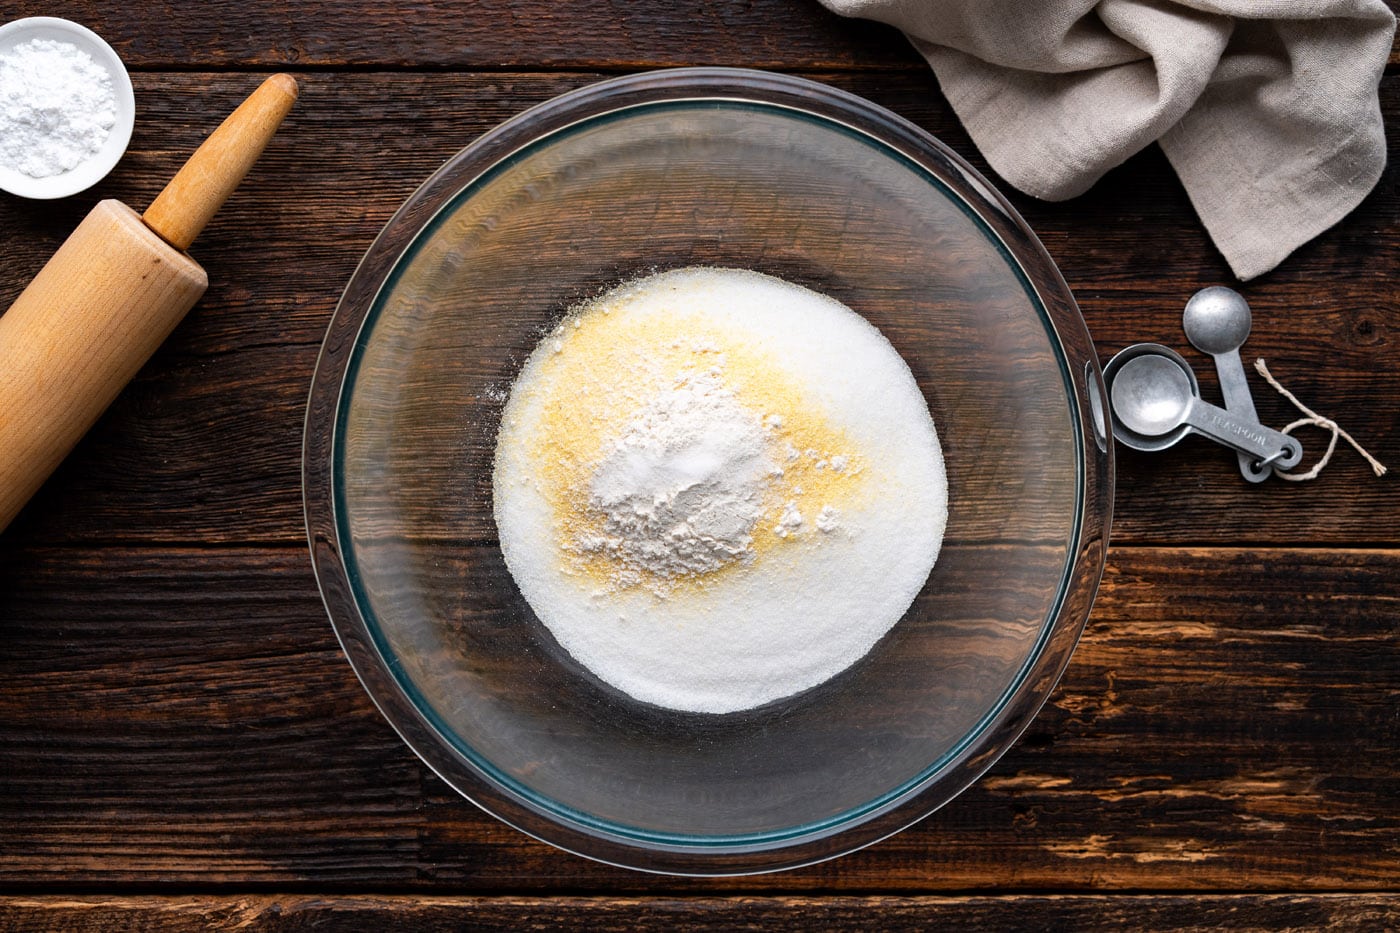 sugar, cornmeal, flour, and salt in a bowl